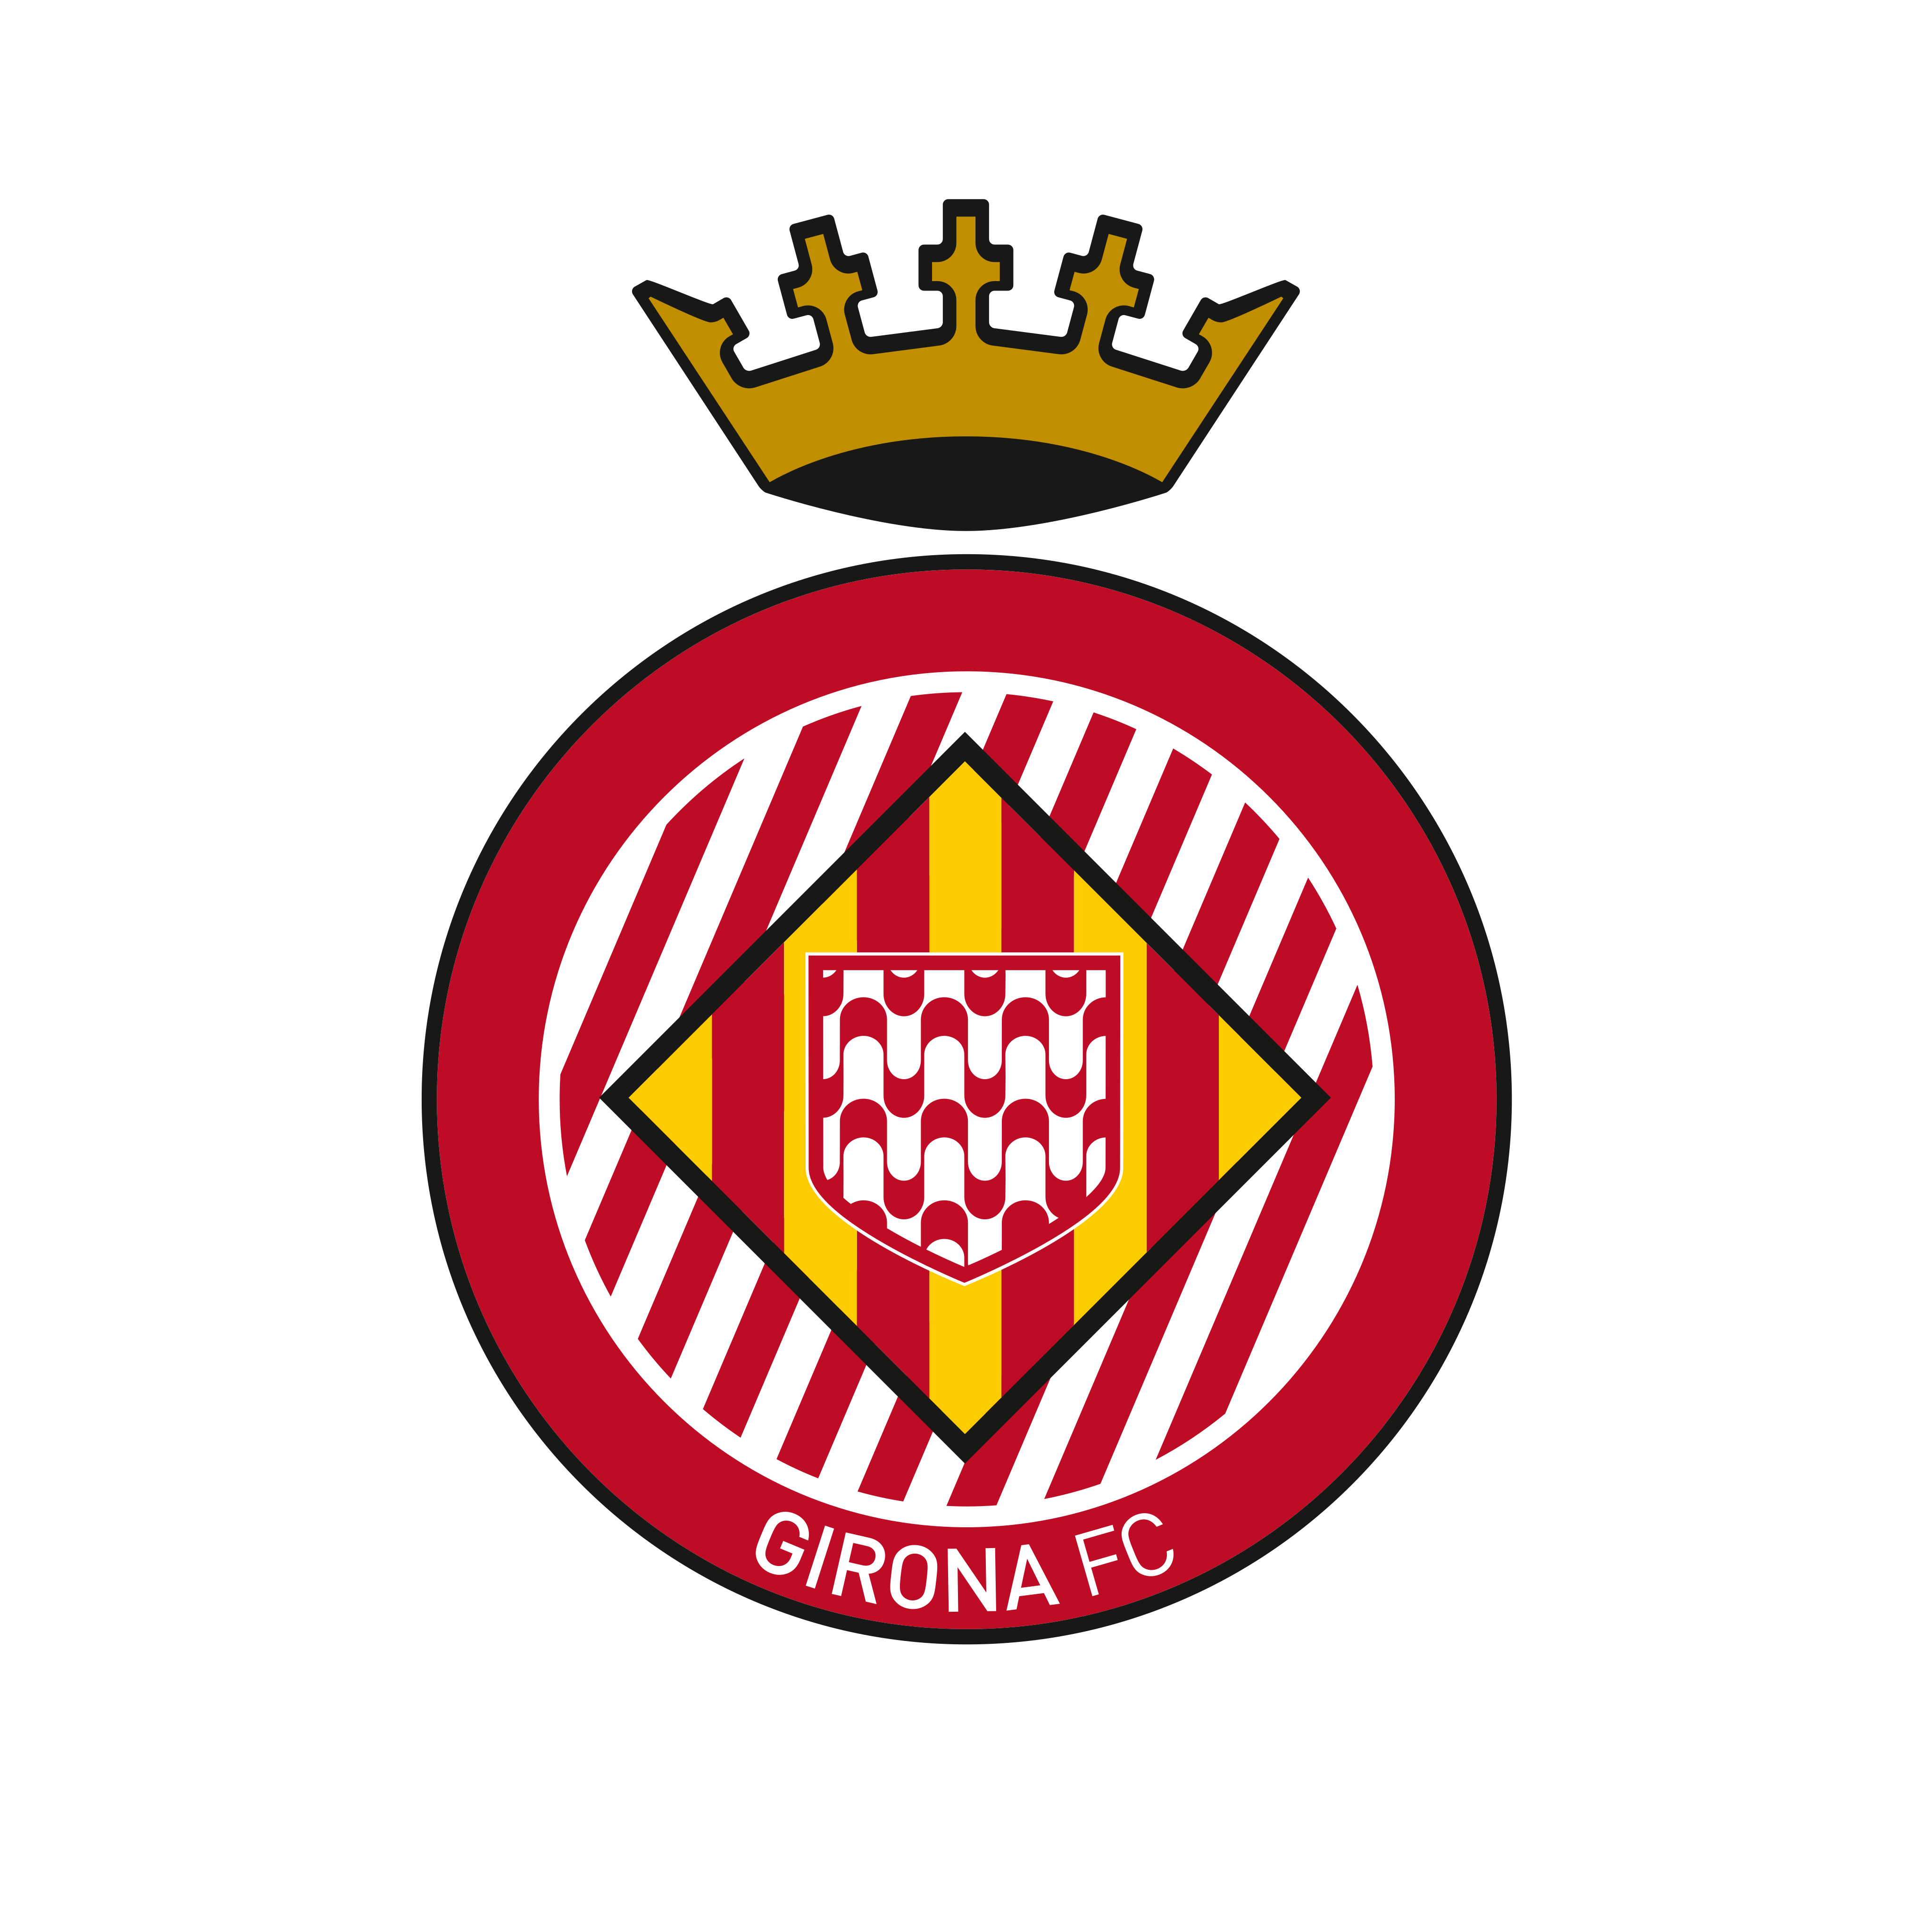 girona fc logo 0 - Girona FC Logo